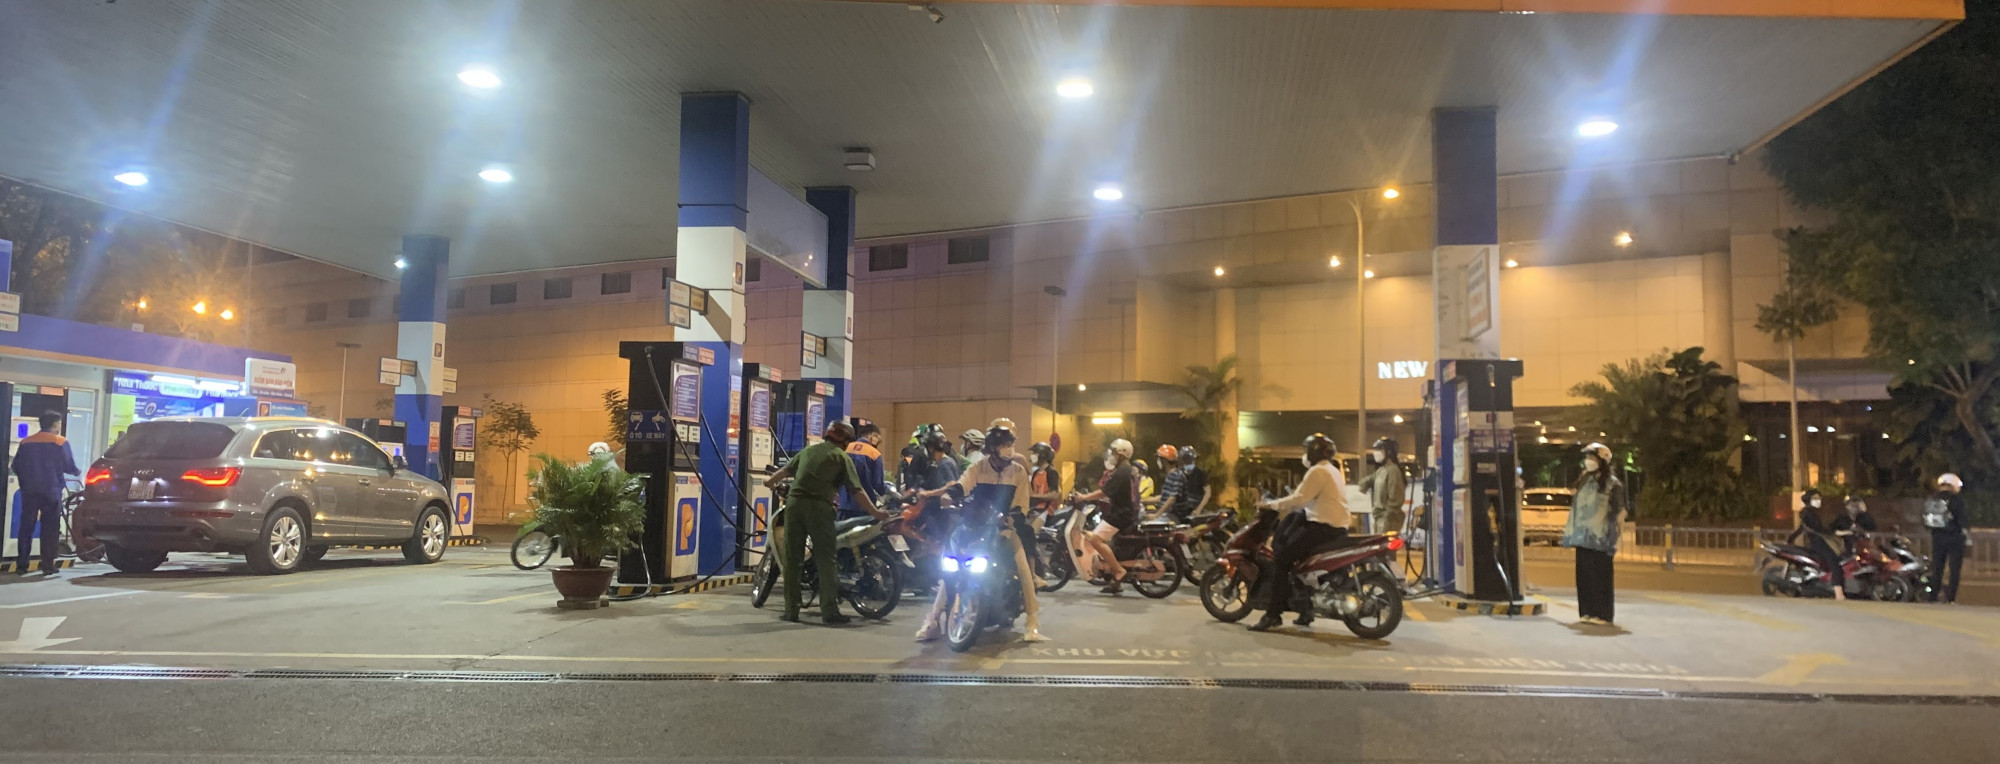 Dù đã 23g khuya nhưng cây xăng góc đường Phạm Hồng Thái - Lê Thánh Tôn vẫn rất đông khách hàng chờ vào đổ xăng